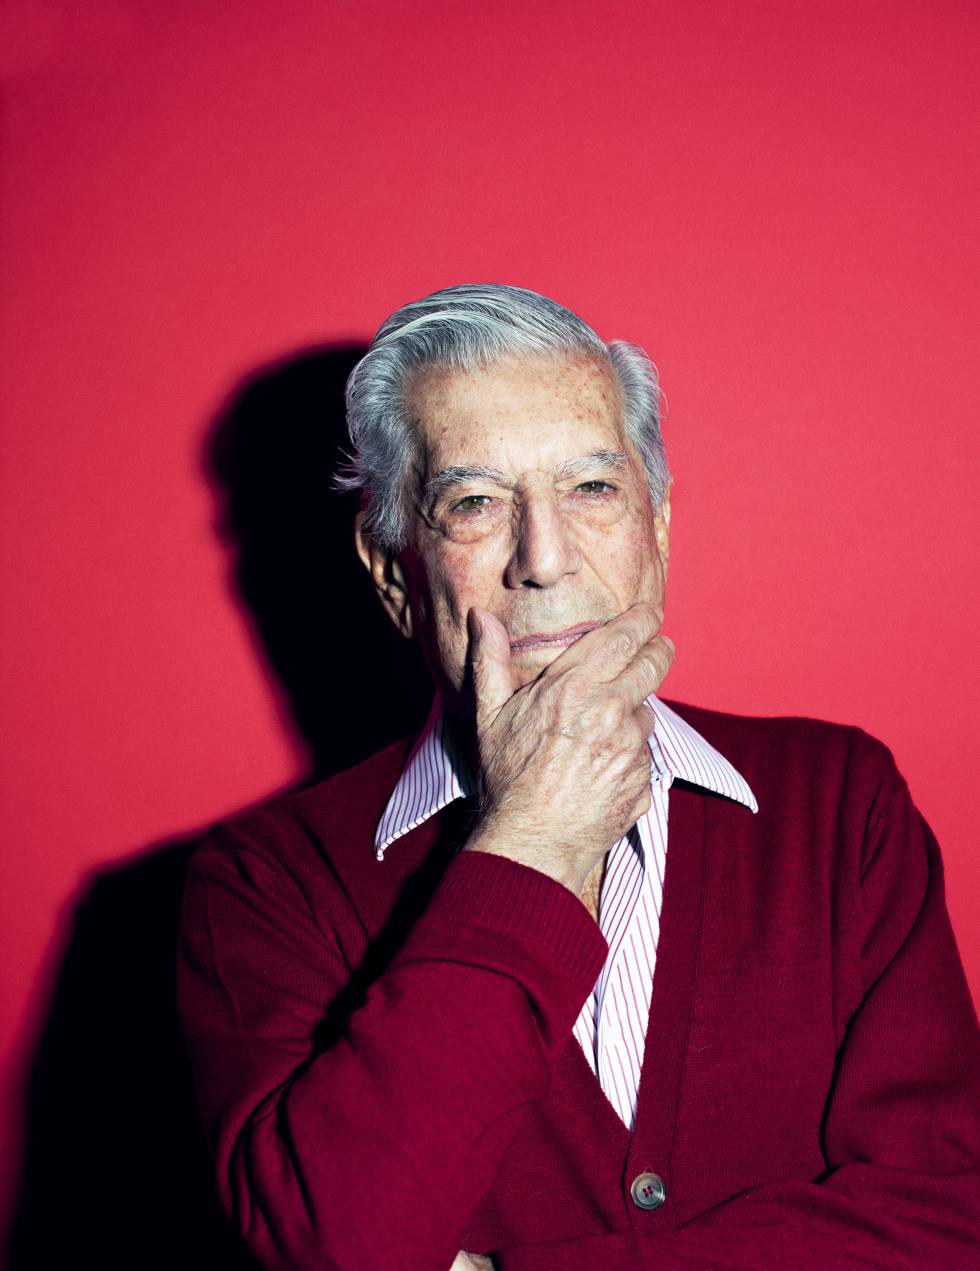 Mario Vargas Llosa: “La corrección política es enemiga de la libertad”